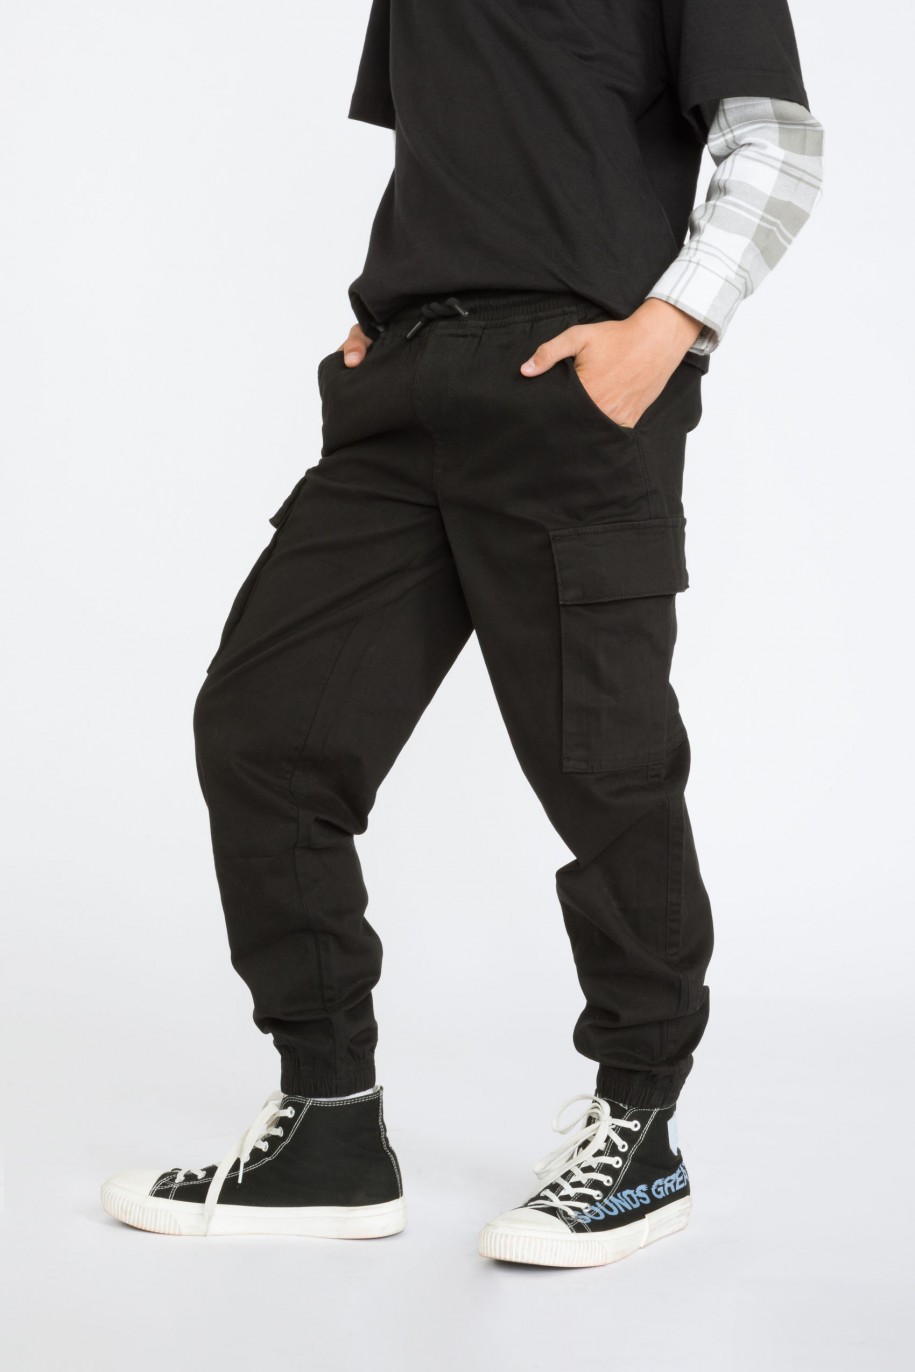 Czarne spodnie joggery typu cargo - 39379